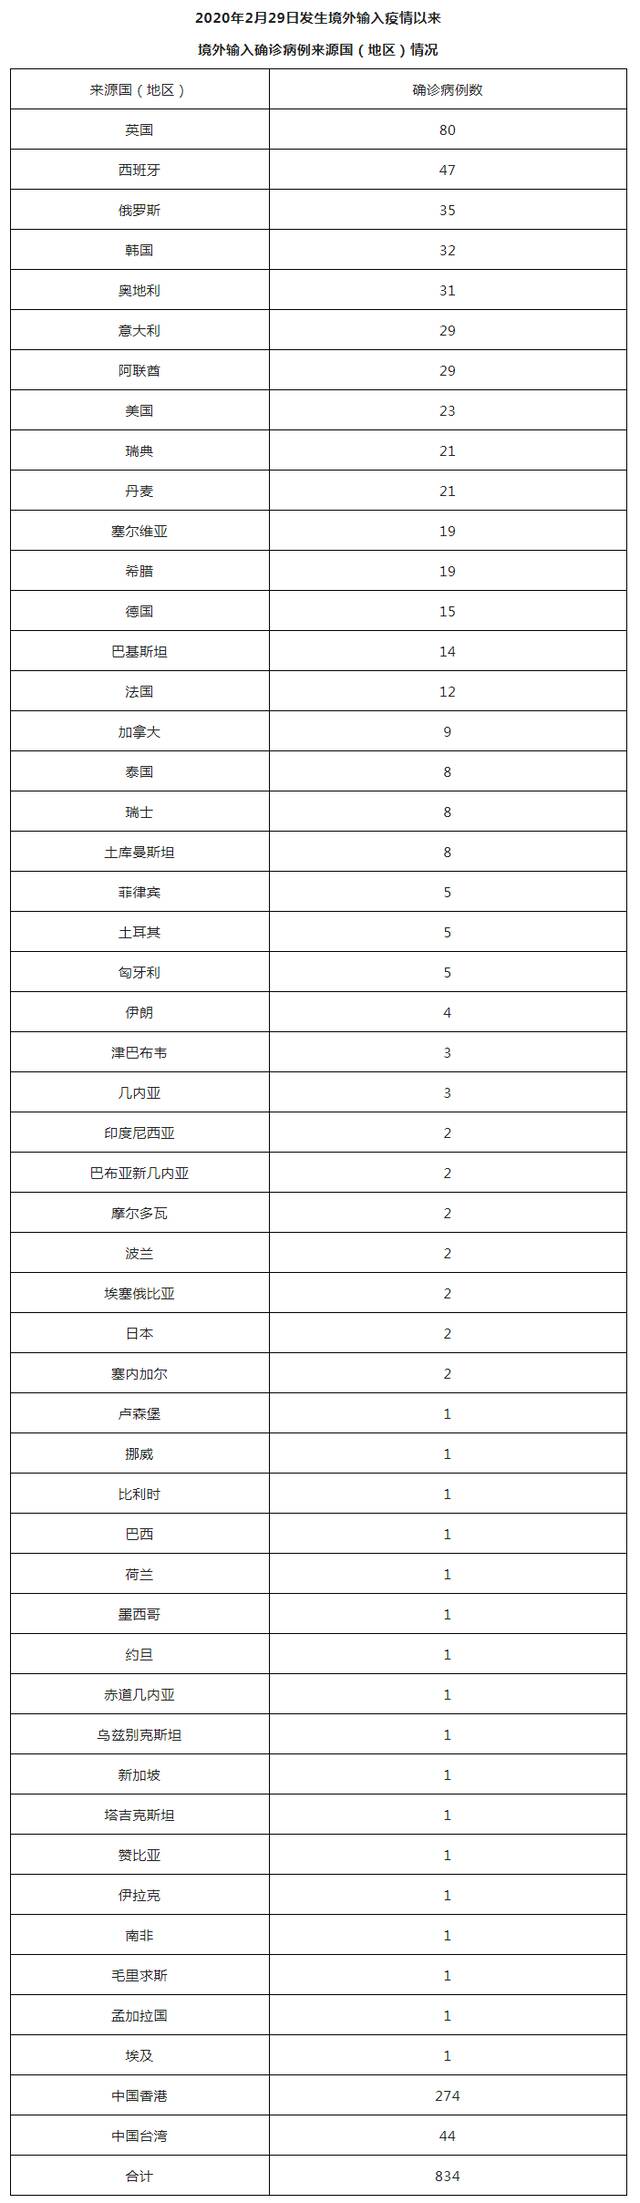 北京8月7日新增2例本土确诊病例（为隔离观察人员）和4例境外输入确诊病例、2例境外输入无症状感染者 治愈出院1例